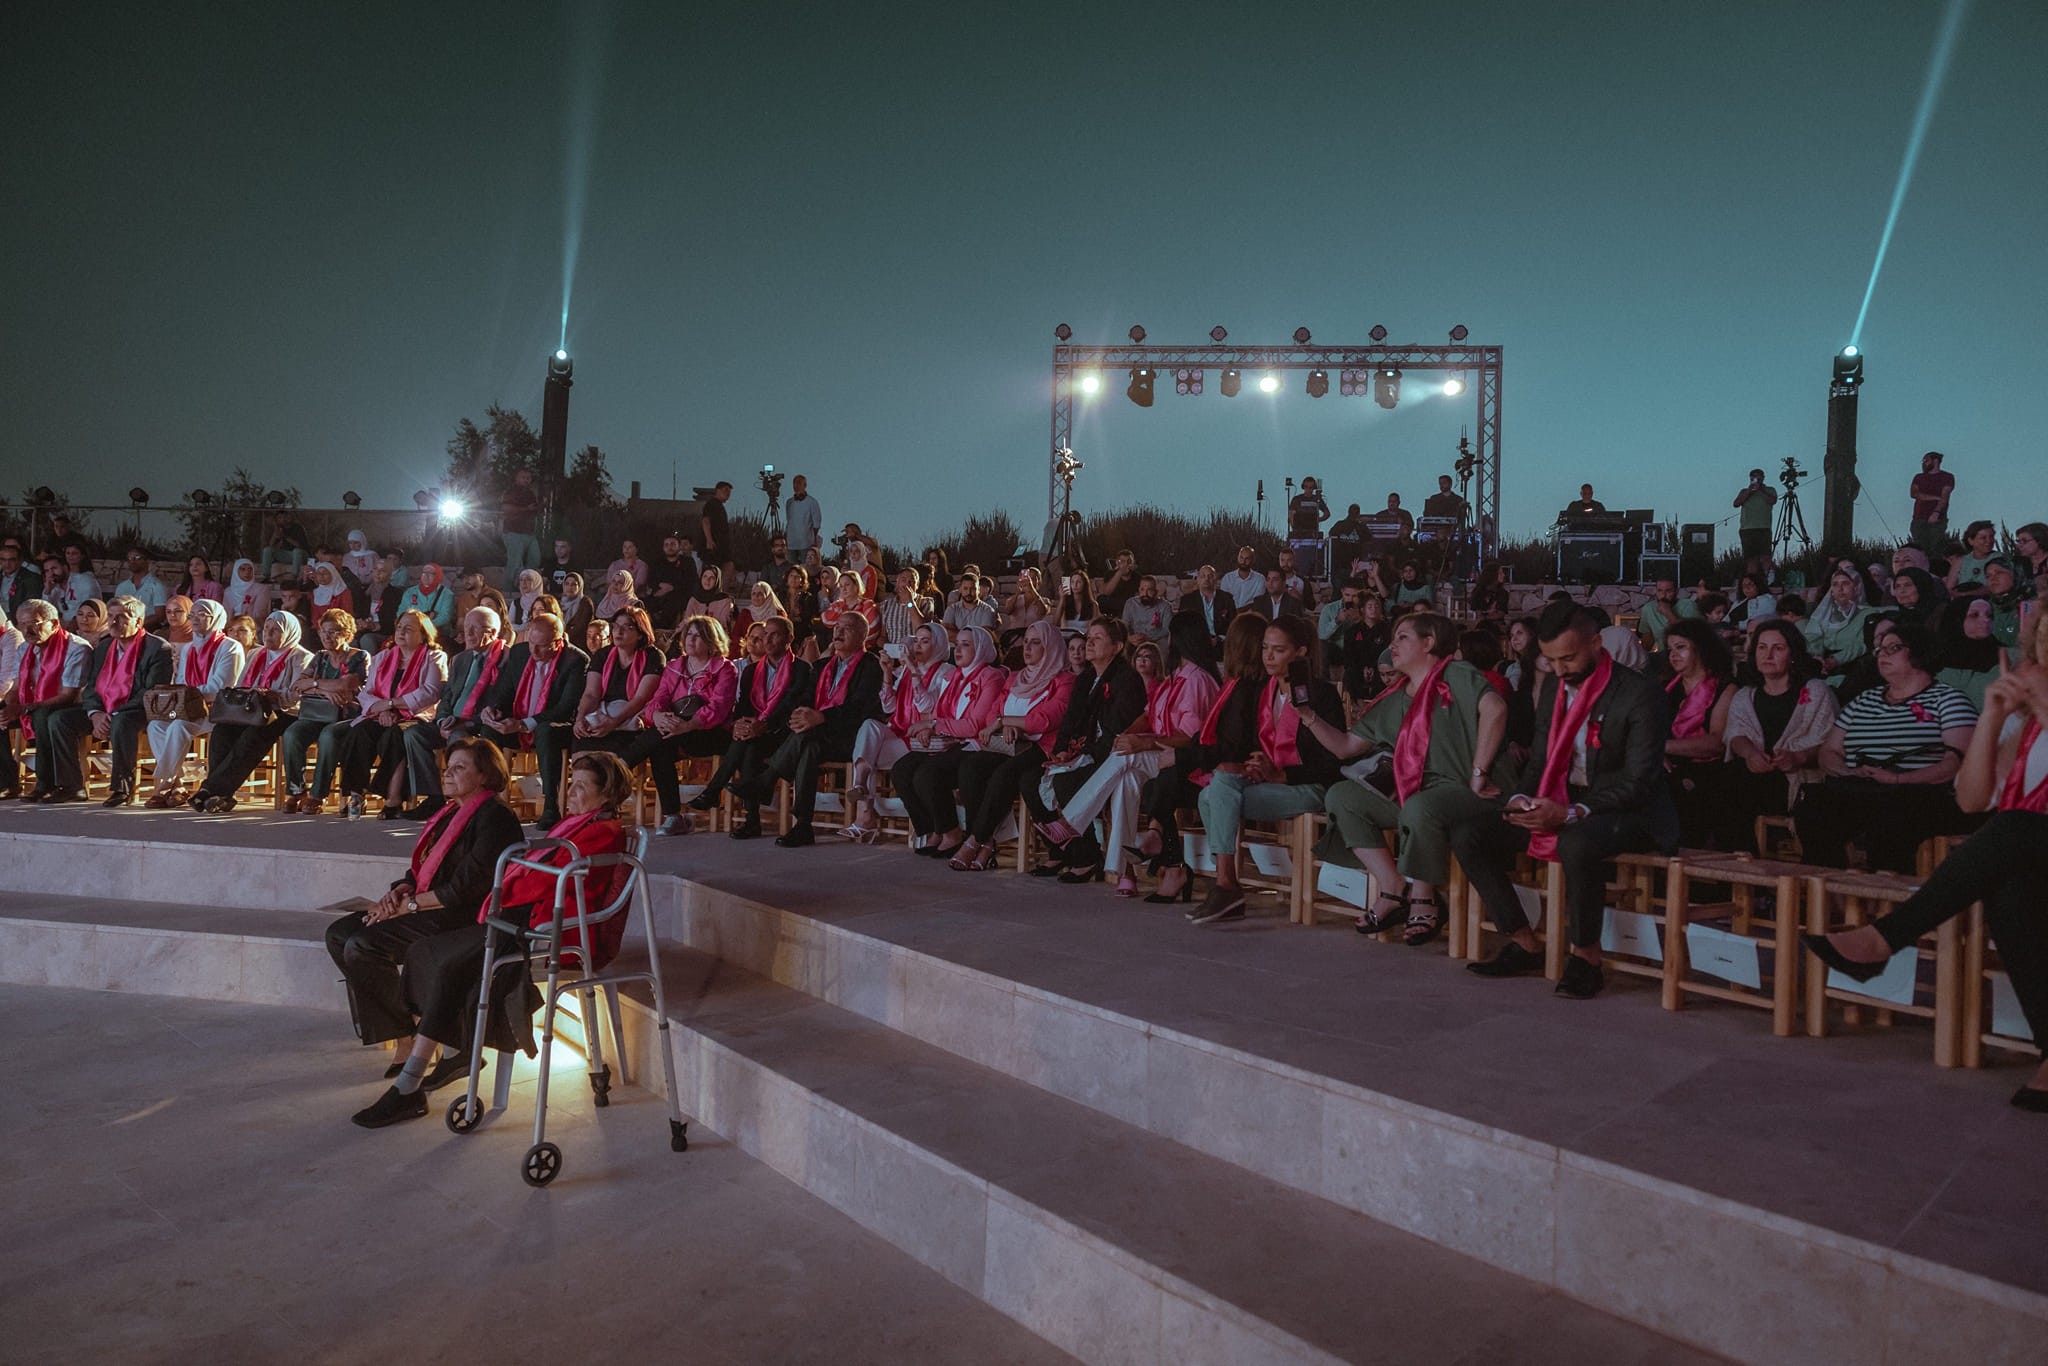 مؤسسة مريم لمكافحة السرطان تضيء سماء فلسطين في اللون الزهري بمناسبة اكتوبر زهر 01.jpg